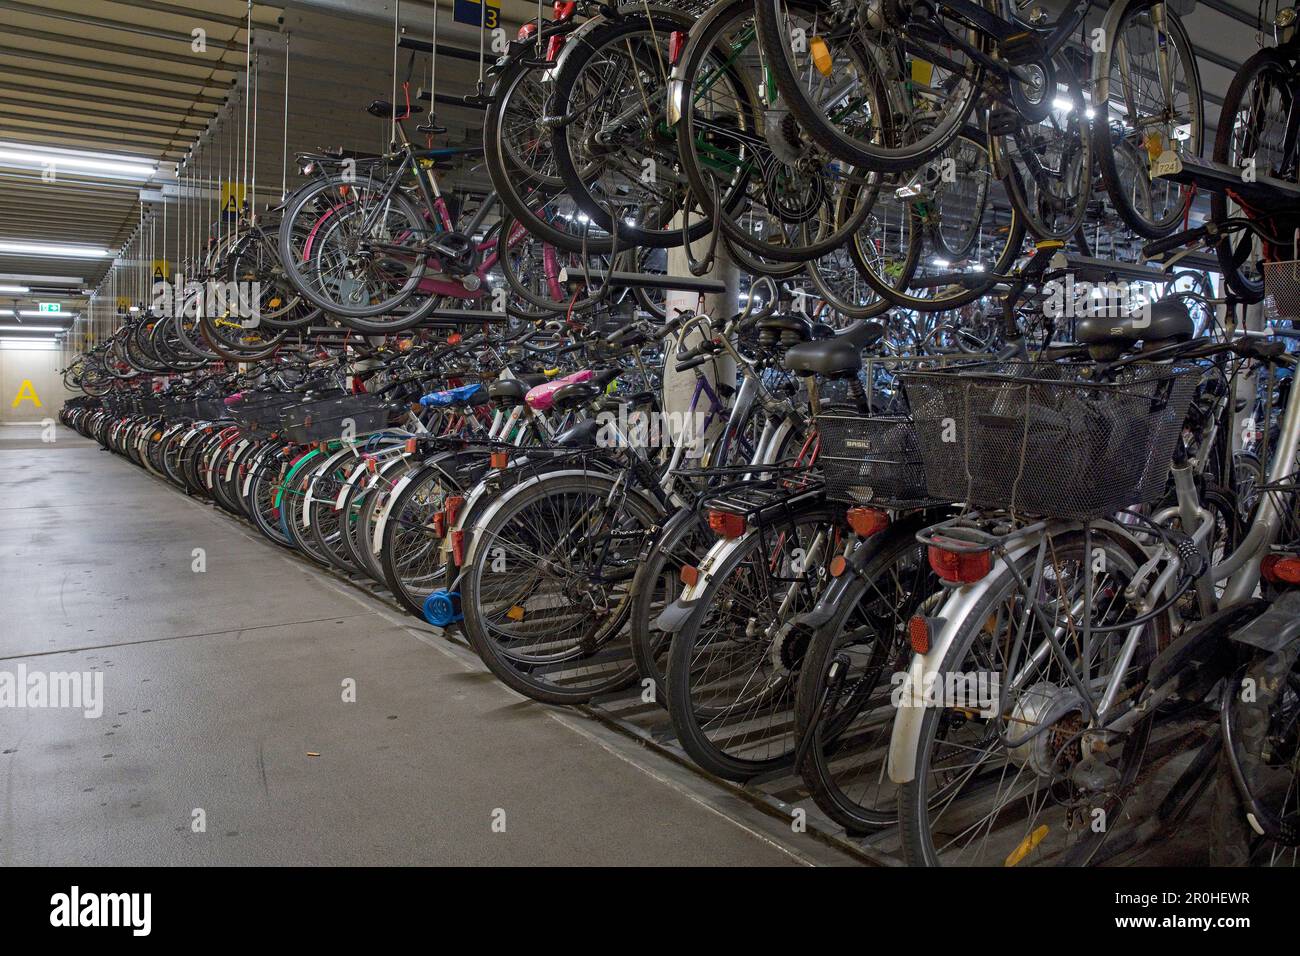 Beaucoup de vélos à la station de vélo à la gare principale, Allemagne, Rhénanie-du-Nord-Westphalie, Munster Banque D'Images